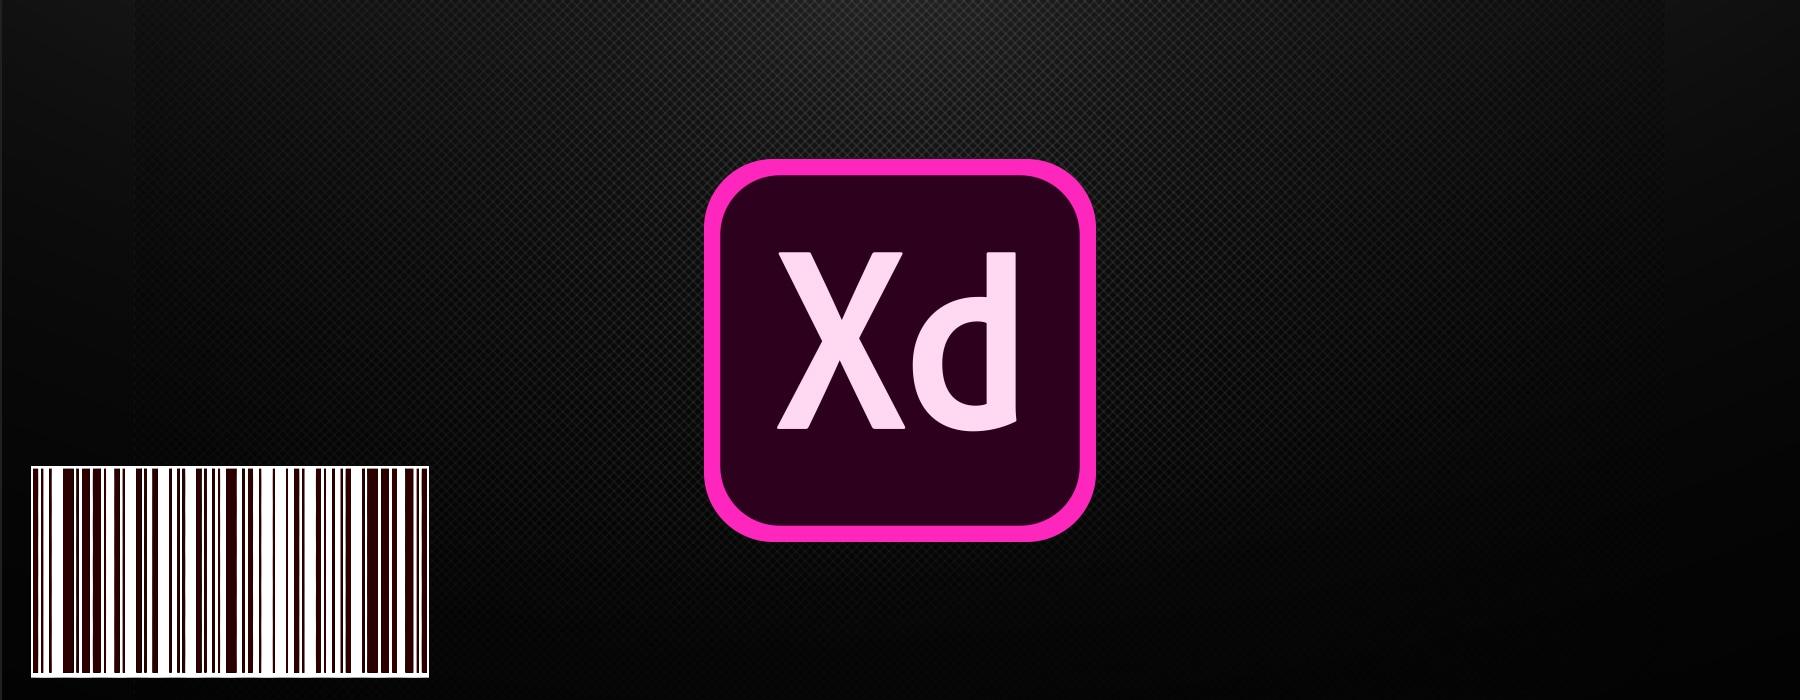 معبأة بميزات جديدة ، يتوفر Adobe XD مجانًا ؛  تعلن الشركة عن صندوق استثماري للتصميم